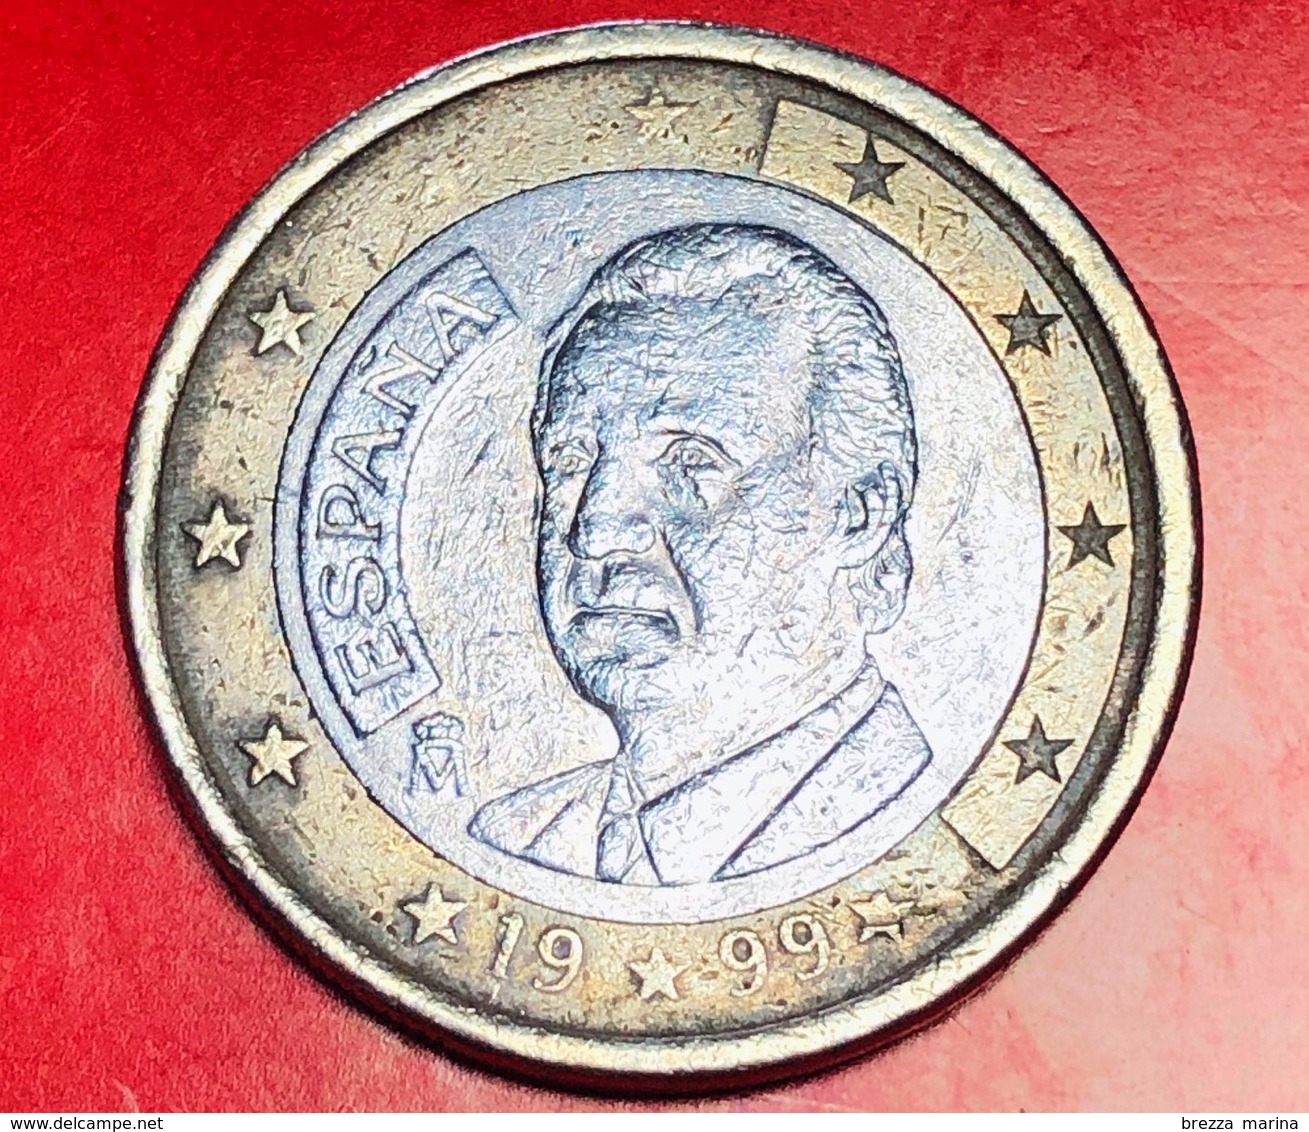 SPAGNA - 1999 - Moneta - Ritratto Di Re Juan Carlos I Di Borbone - Euro - 1.00 - Slovenië